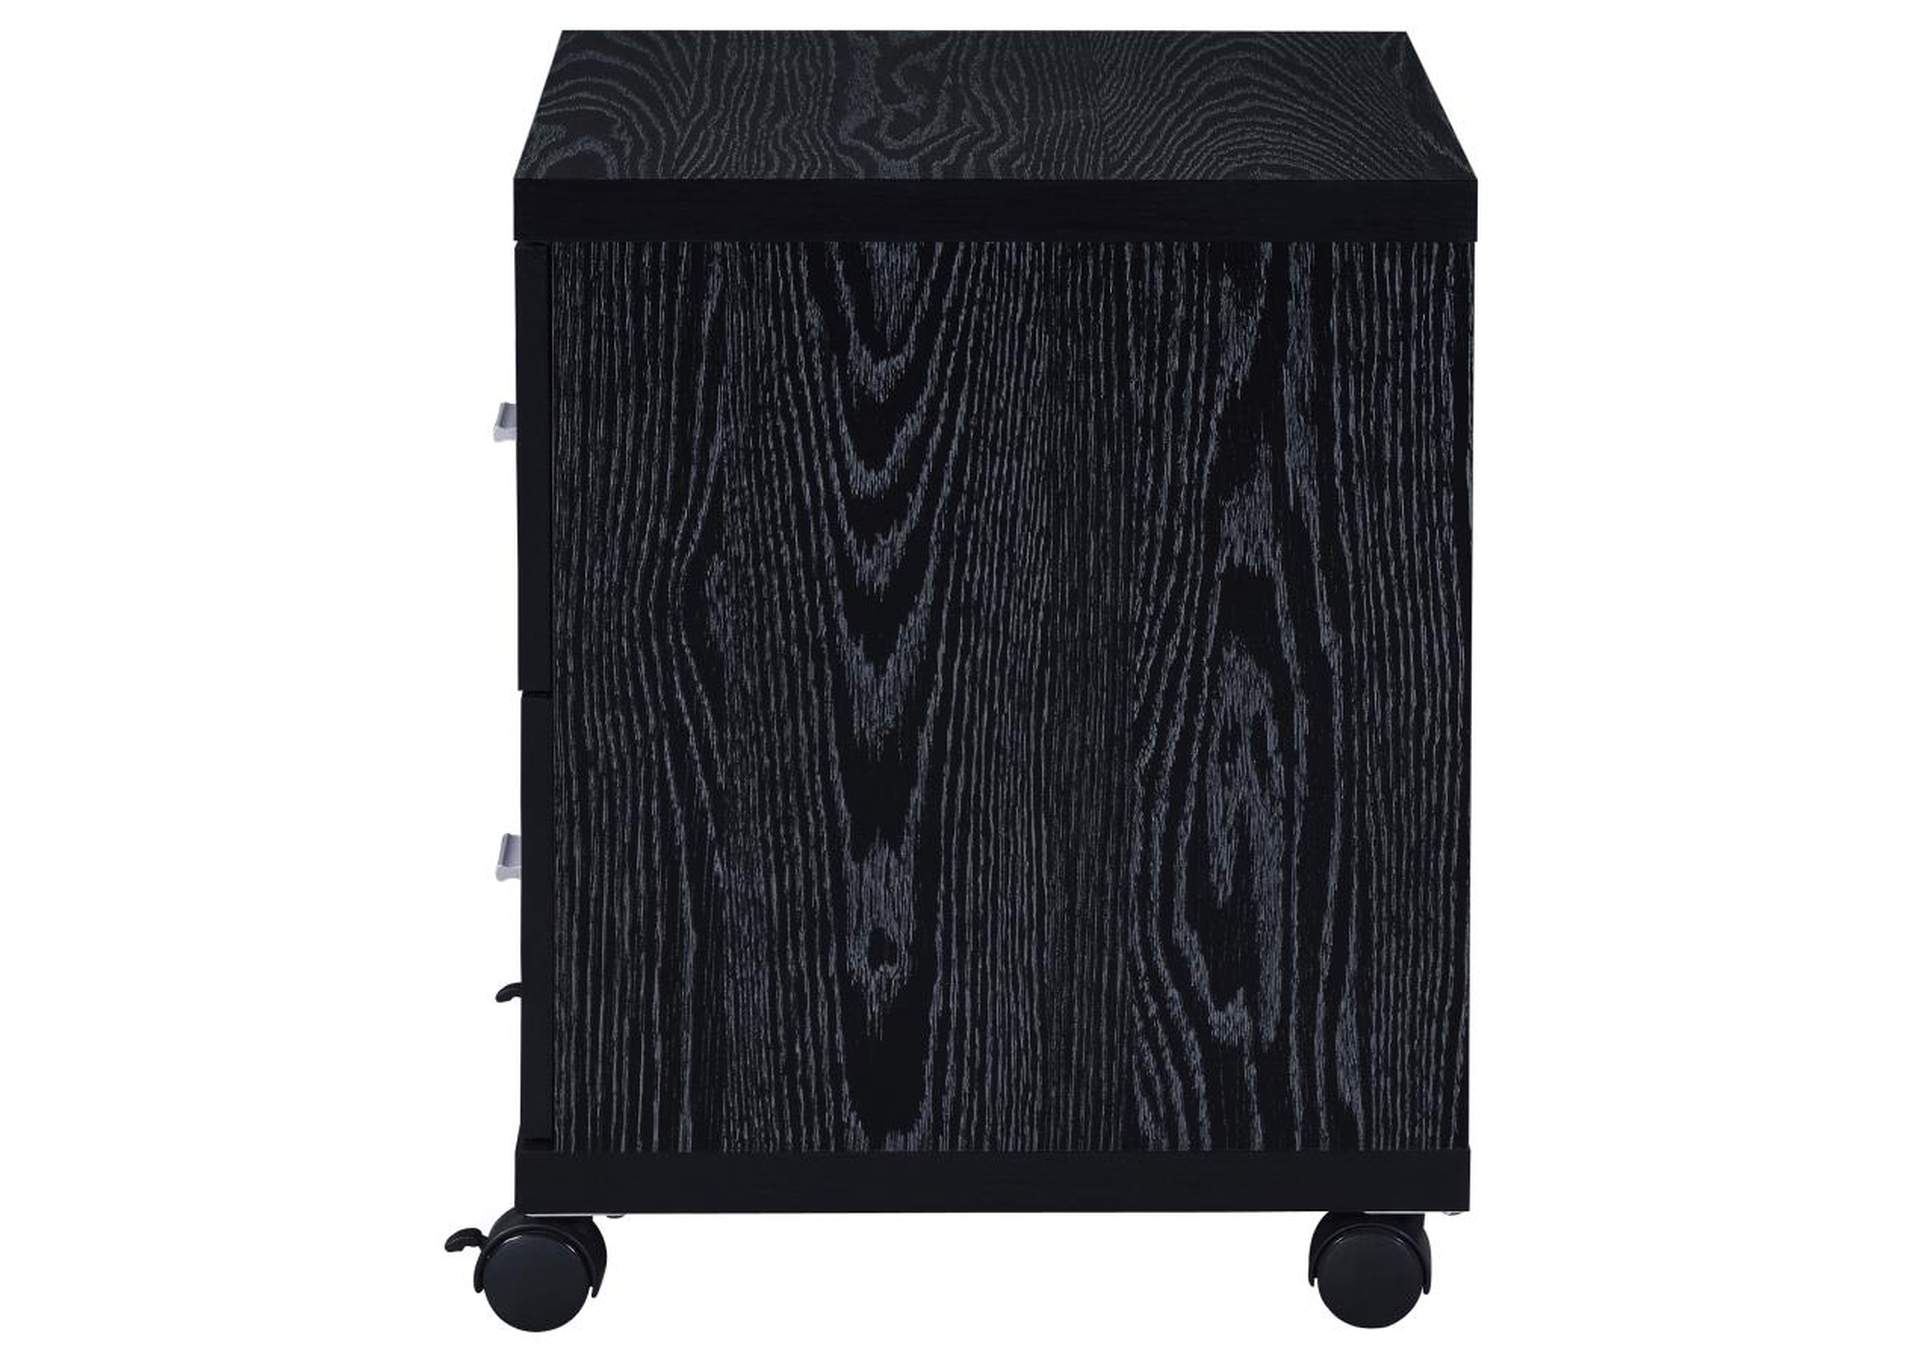 Russell 2-Drawer Cpu Stand Black Oak,Coaster Furniture